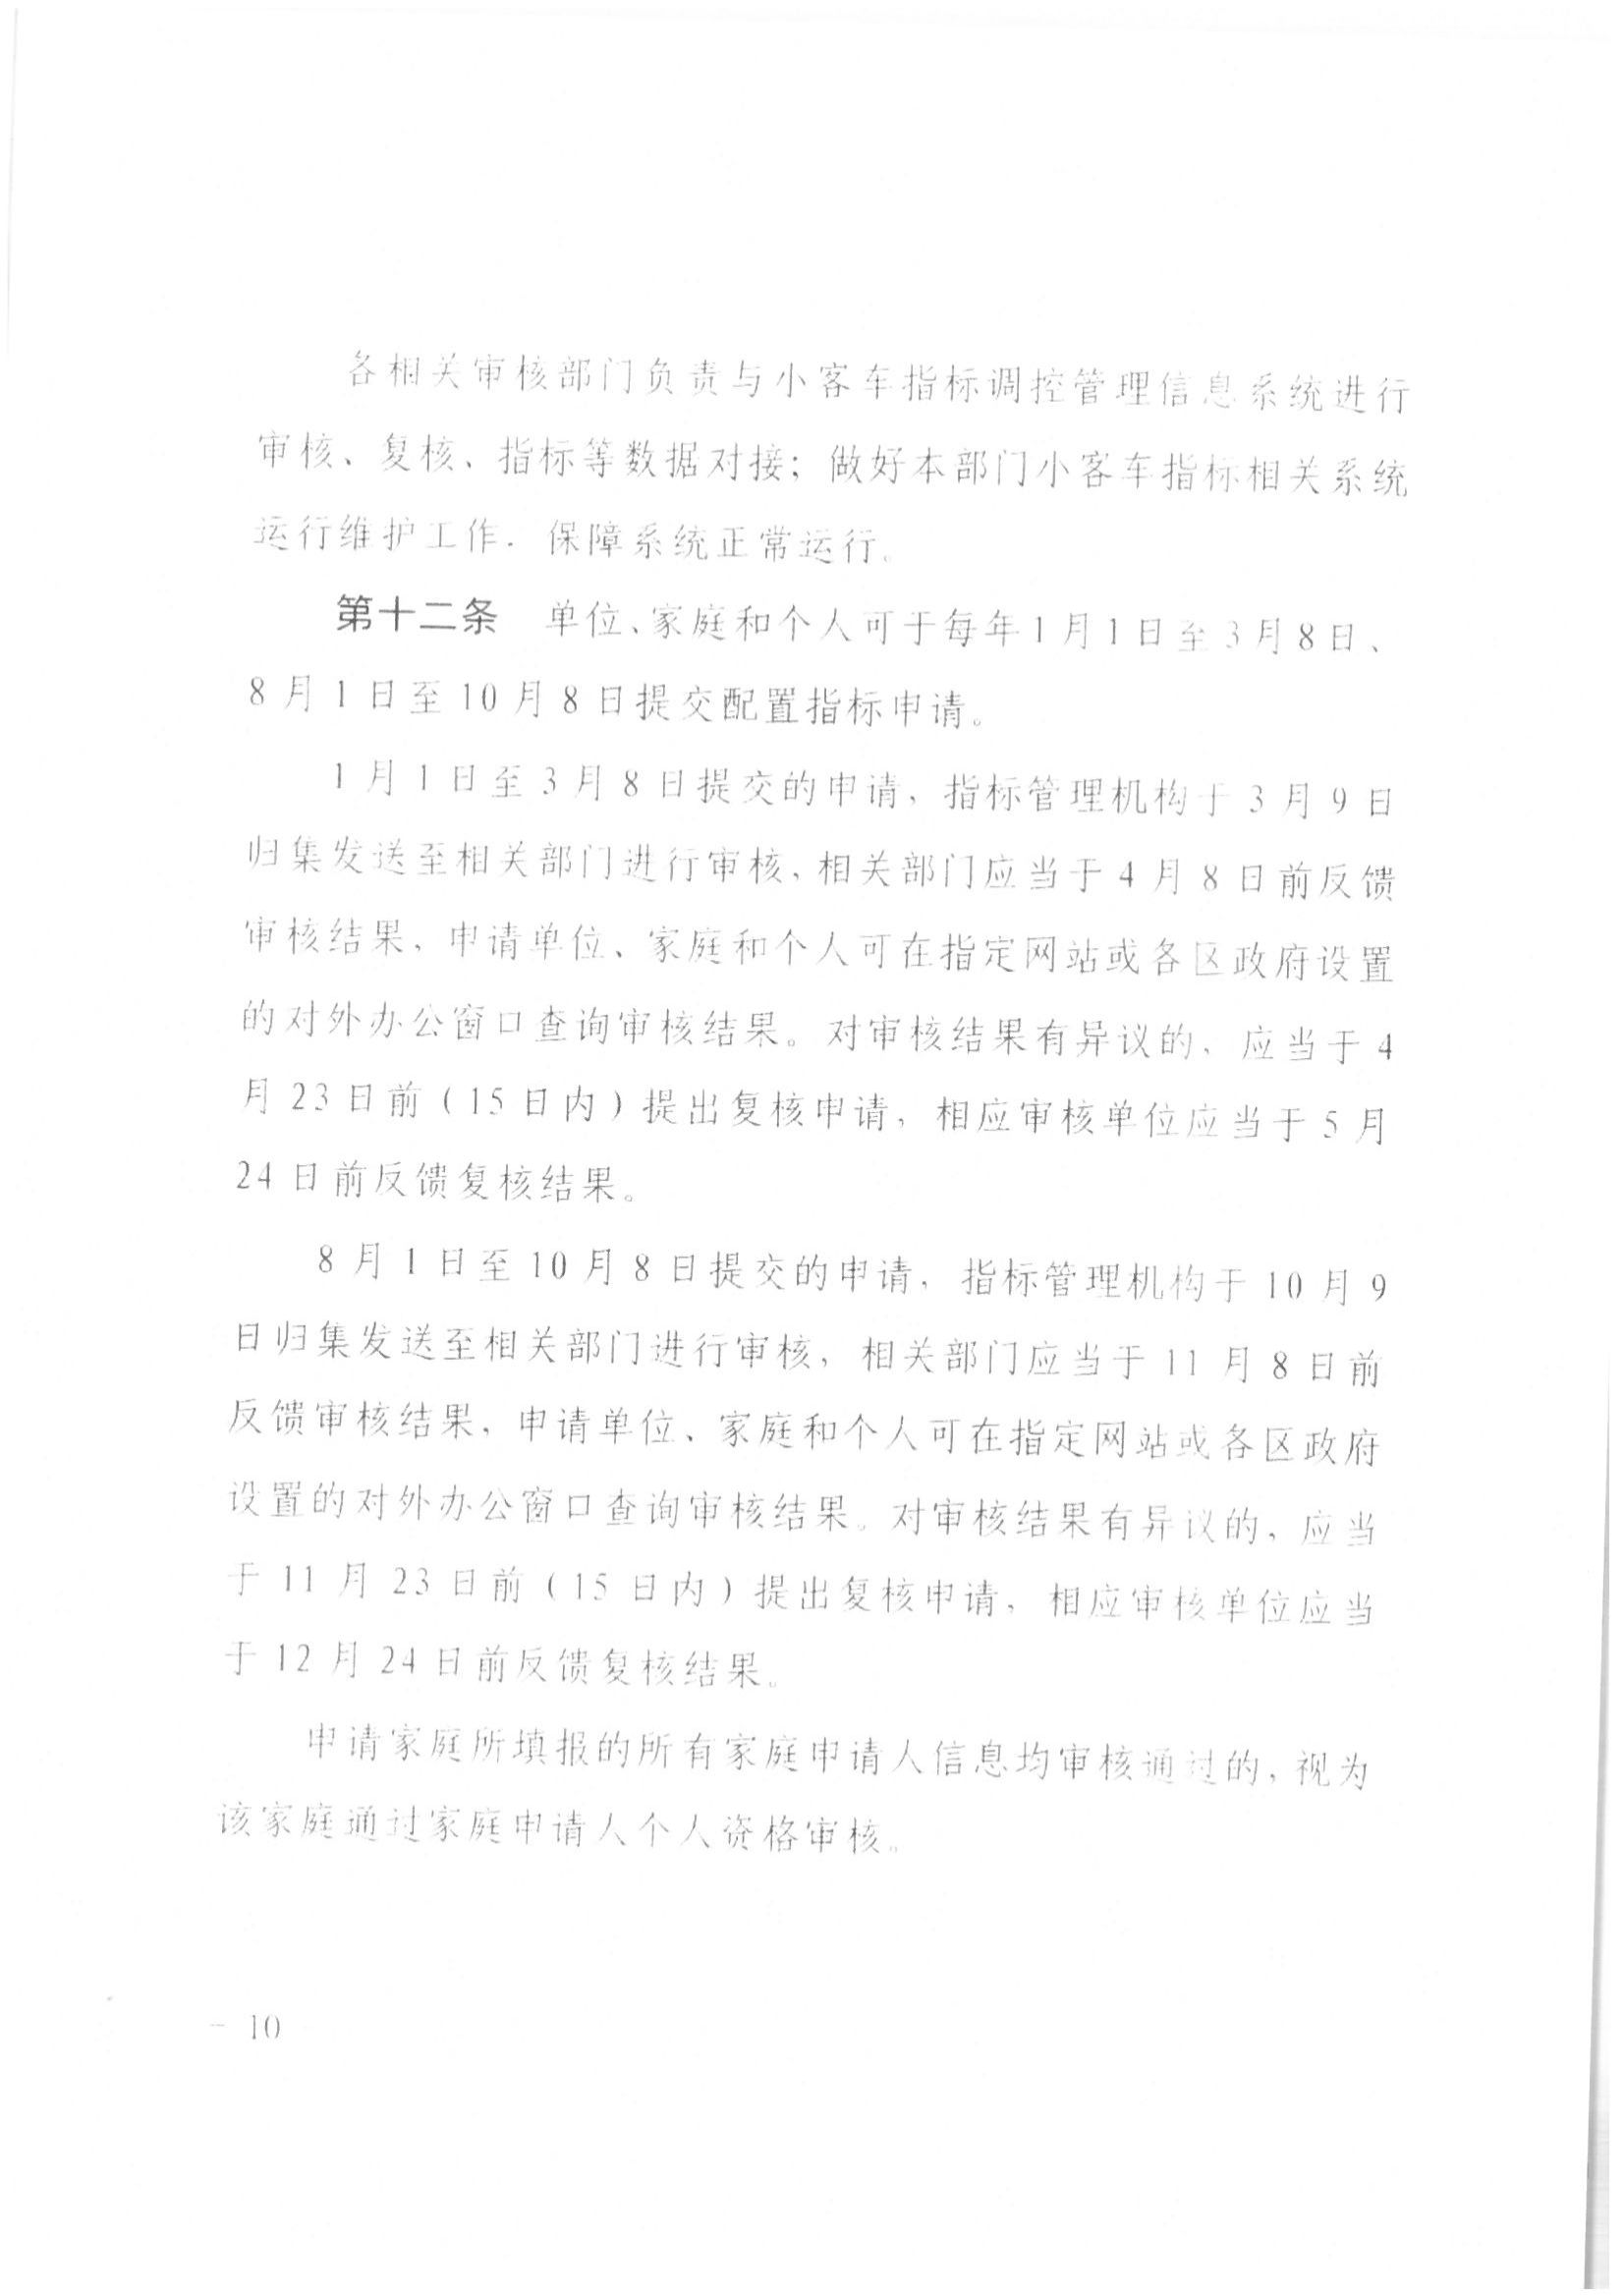 京公协字【2021】21号 北京市公证协会规范执业指引【第13号】_33